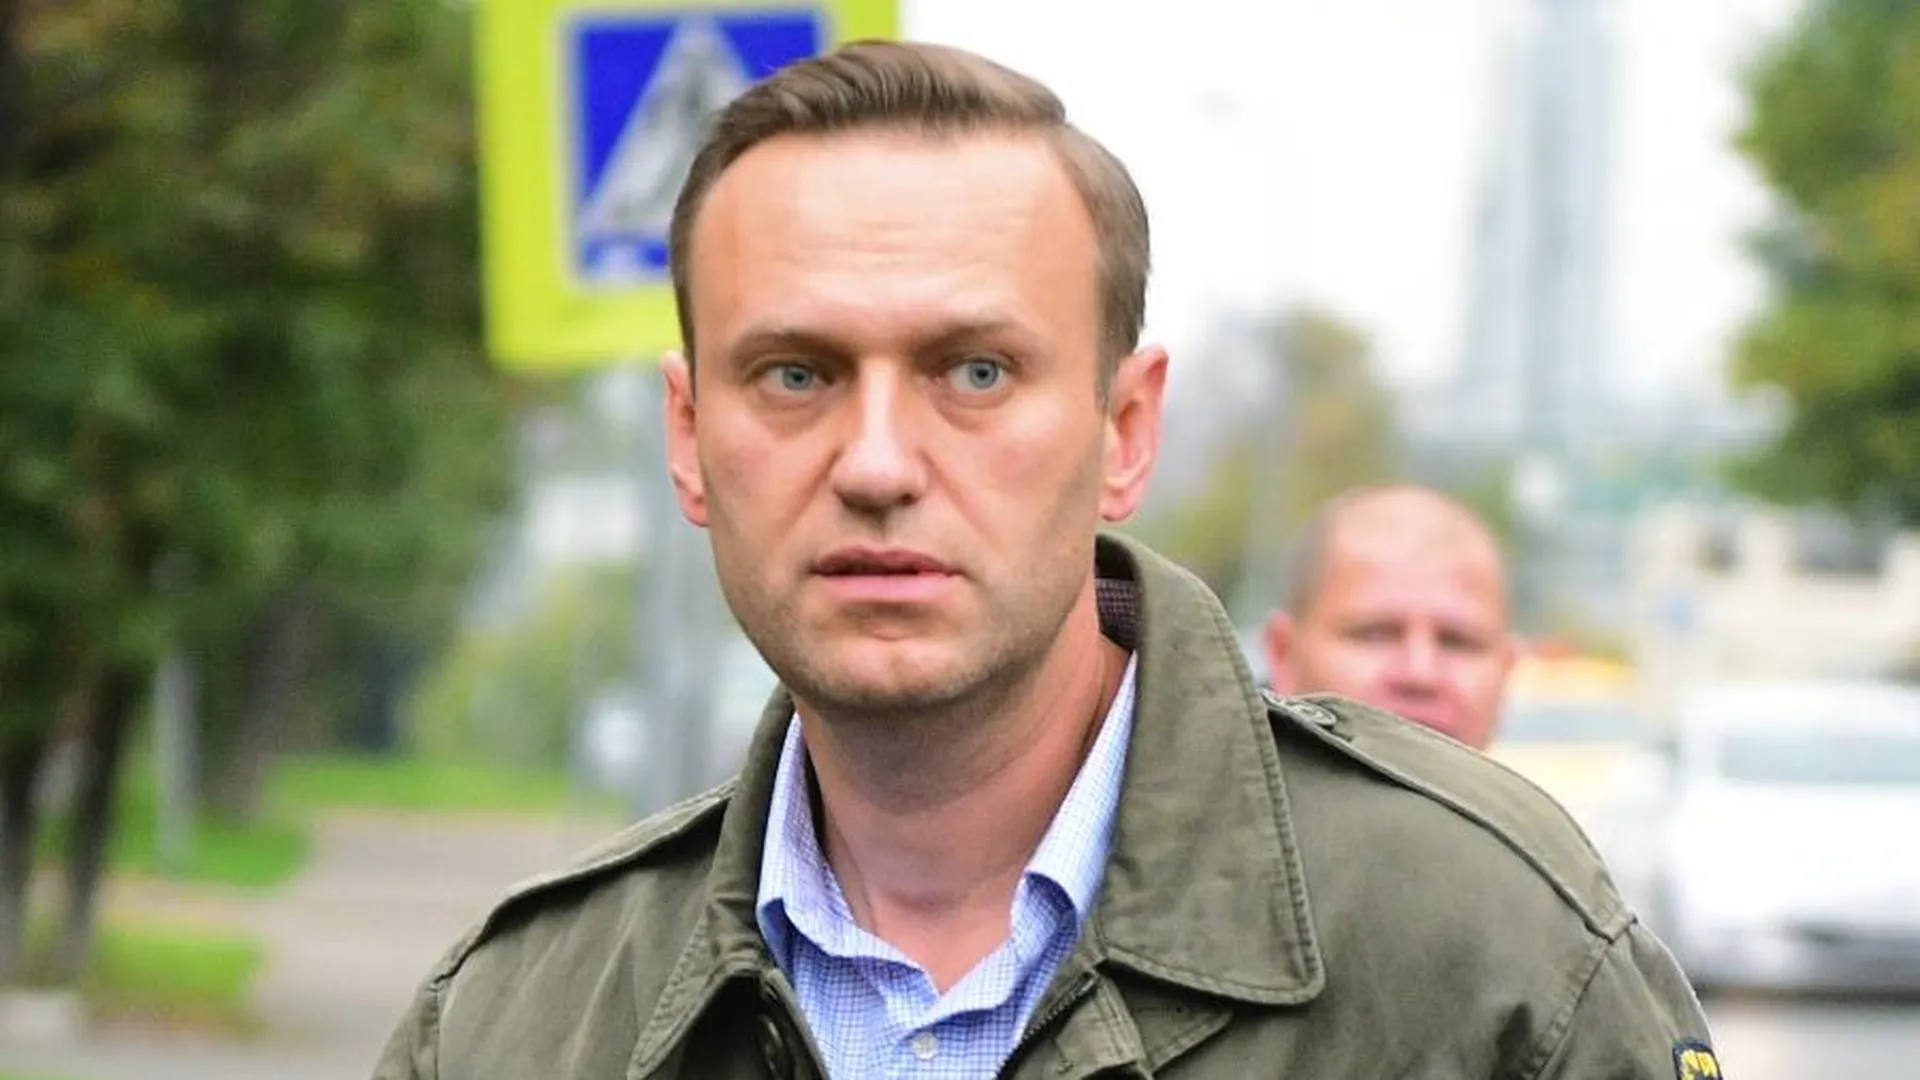 Тело Алексея Навального* отдали его матери